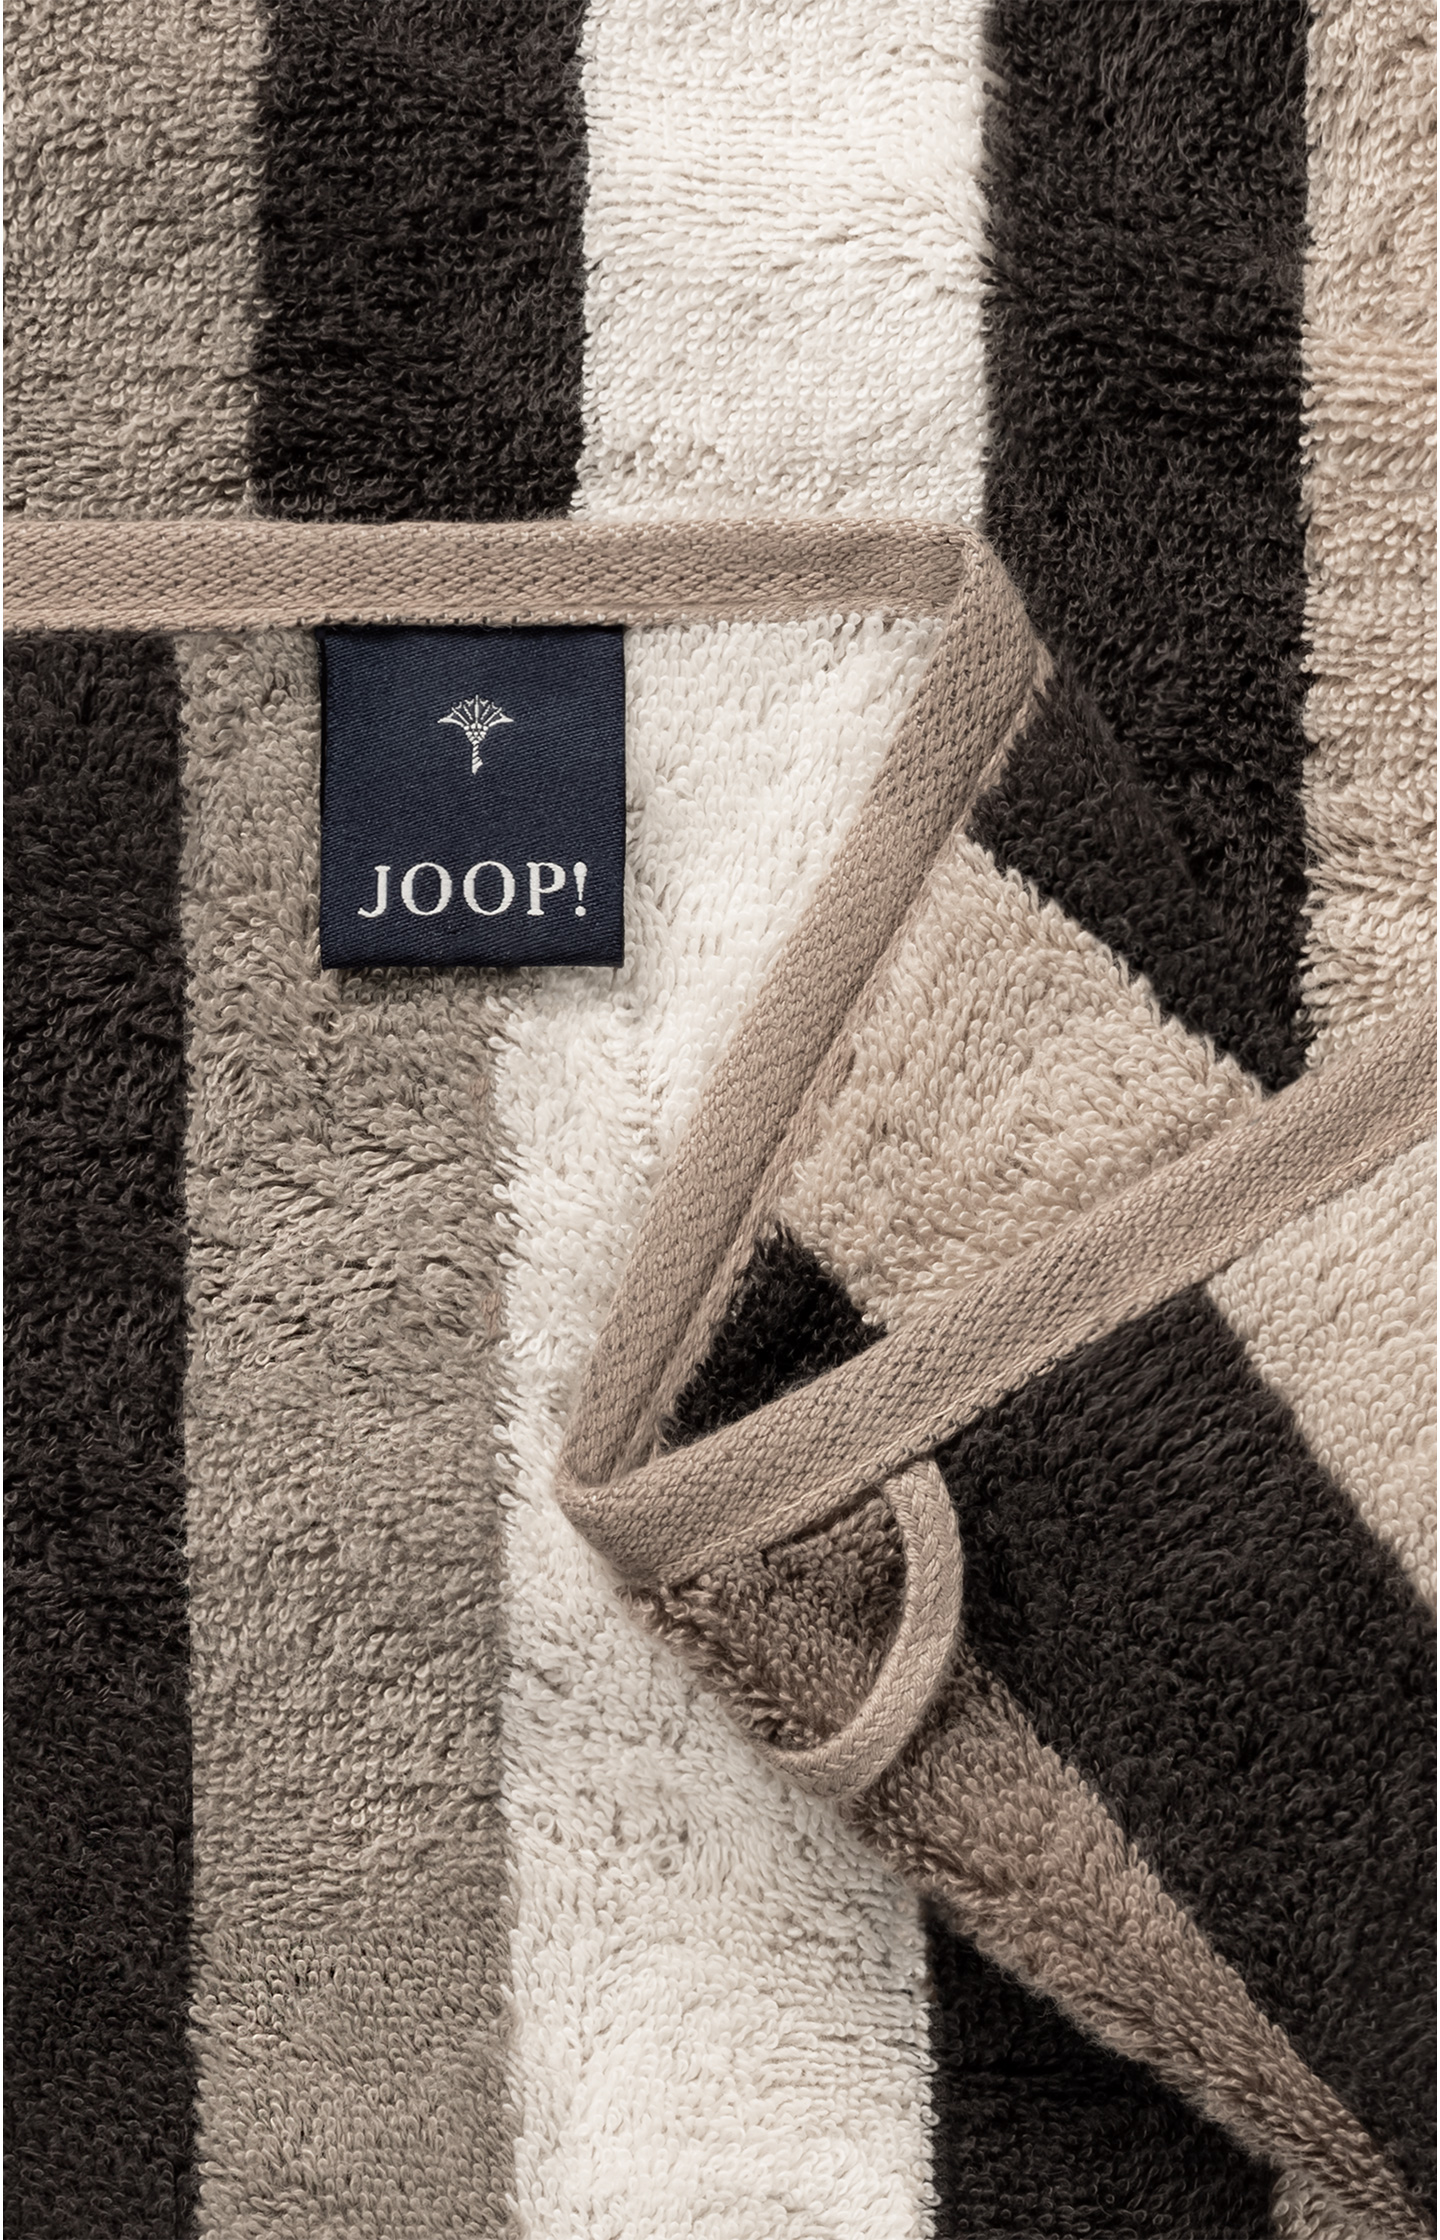 Handtuch JOOP! TONE STRIPES in Sand gestreift - im JOOP! Online-Shop